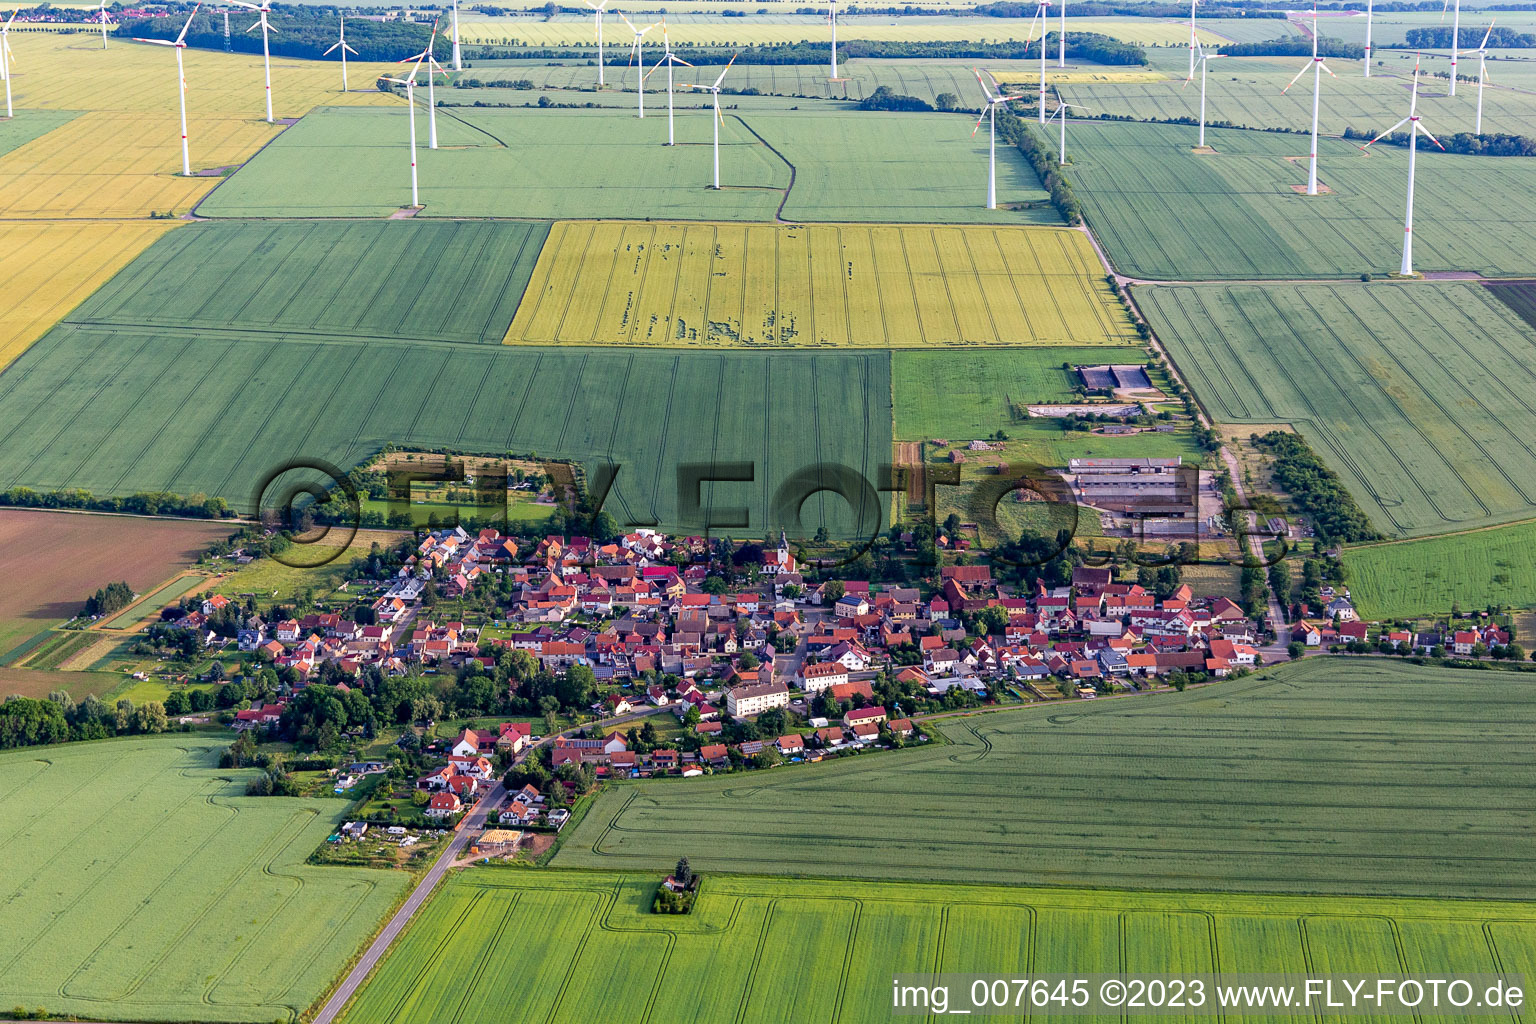 Vue aérienne de Éoliennes d'une centrale éolienne sur des terres agricoles et des champs en bordure de la zone d'habitation du village de Hochheim à Nessetal dans le département Thuringe, Allemagne